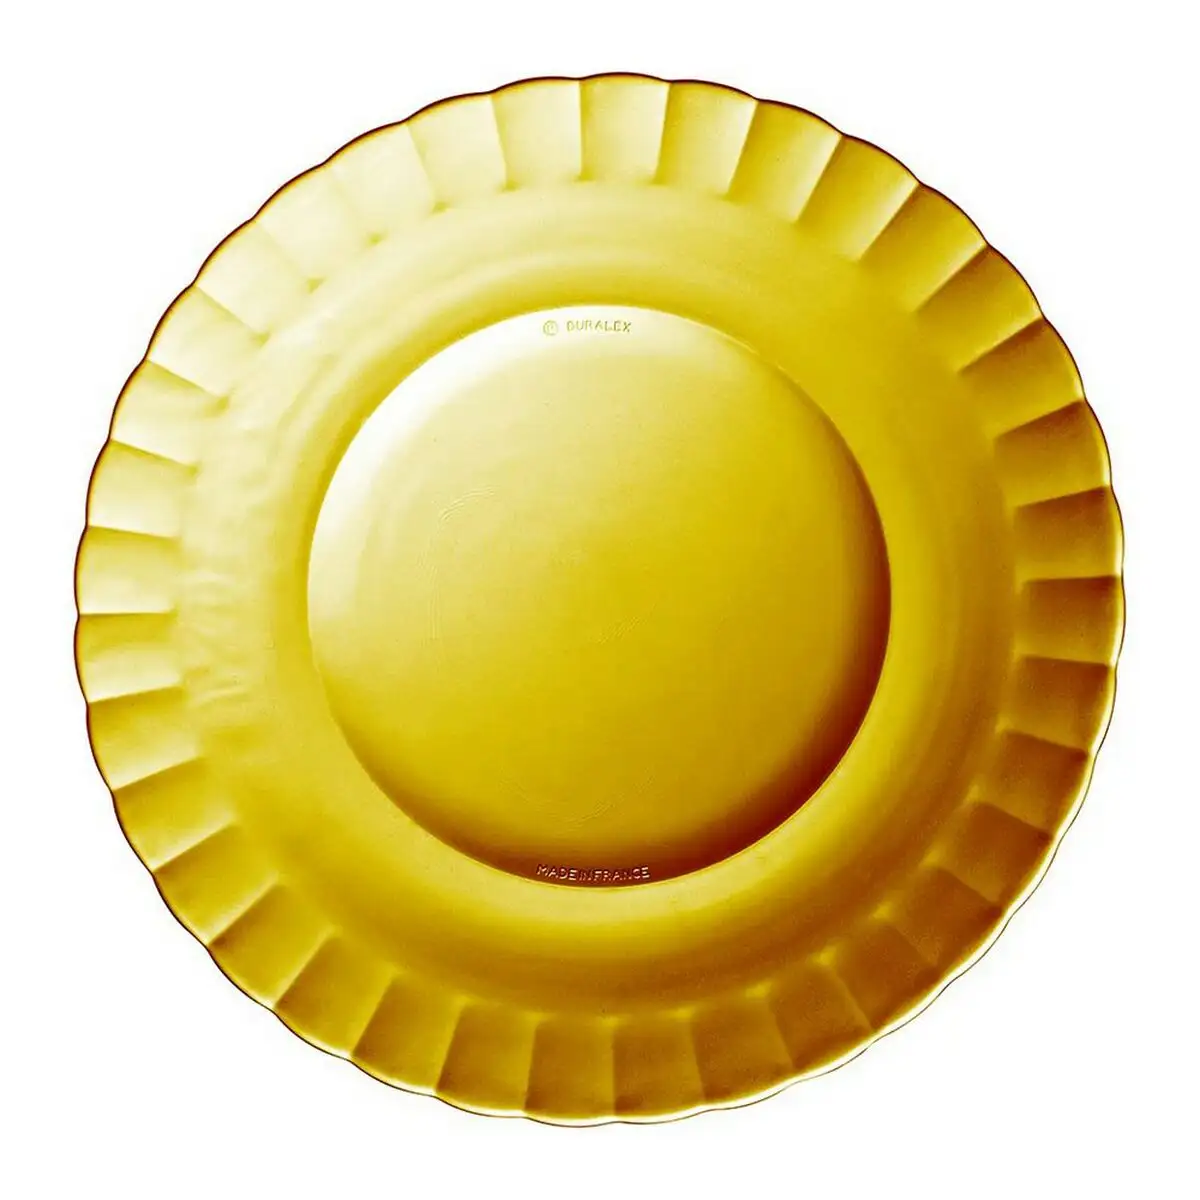 Assiette plate duralex picardie verre ambre o 26 cm _2182. DIAYTAR SENEGAL - Là où Chaque Produit a son Propre Éclat. Explorez notre boutique en ligne et trouvez des articles qui ajoutent de la brillance à votre quotidien.